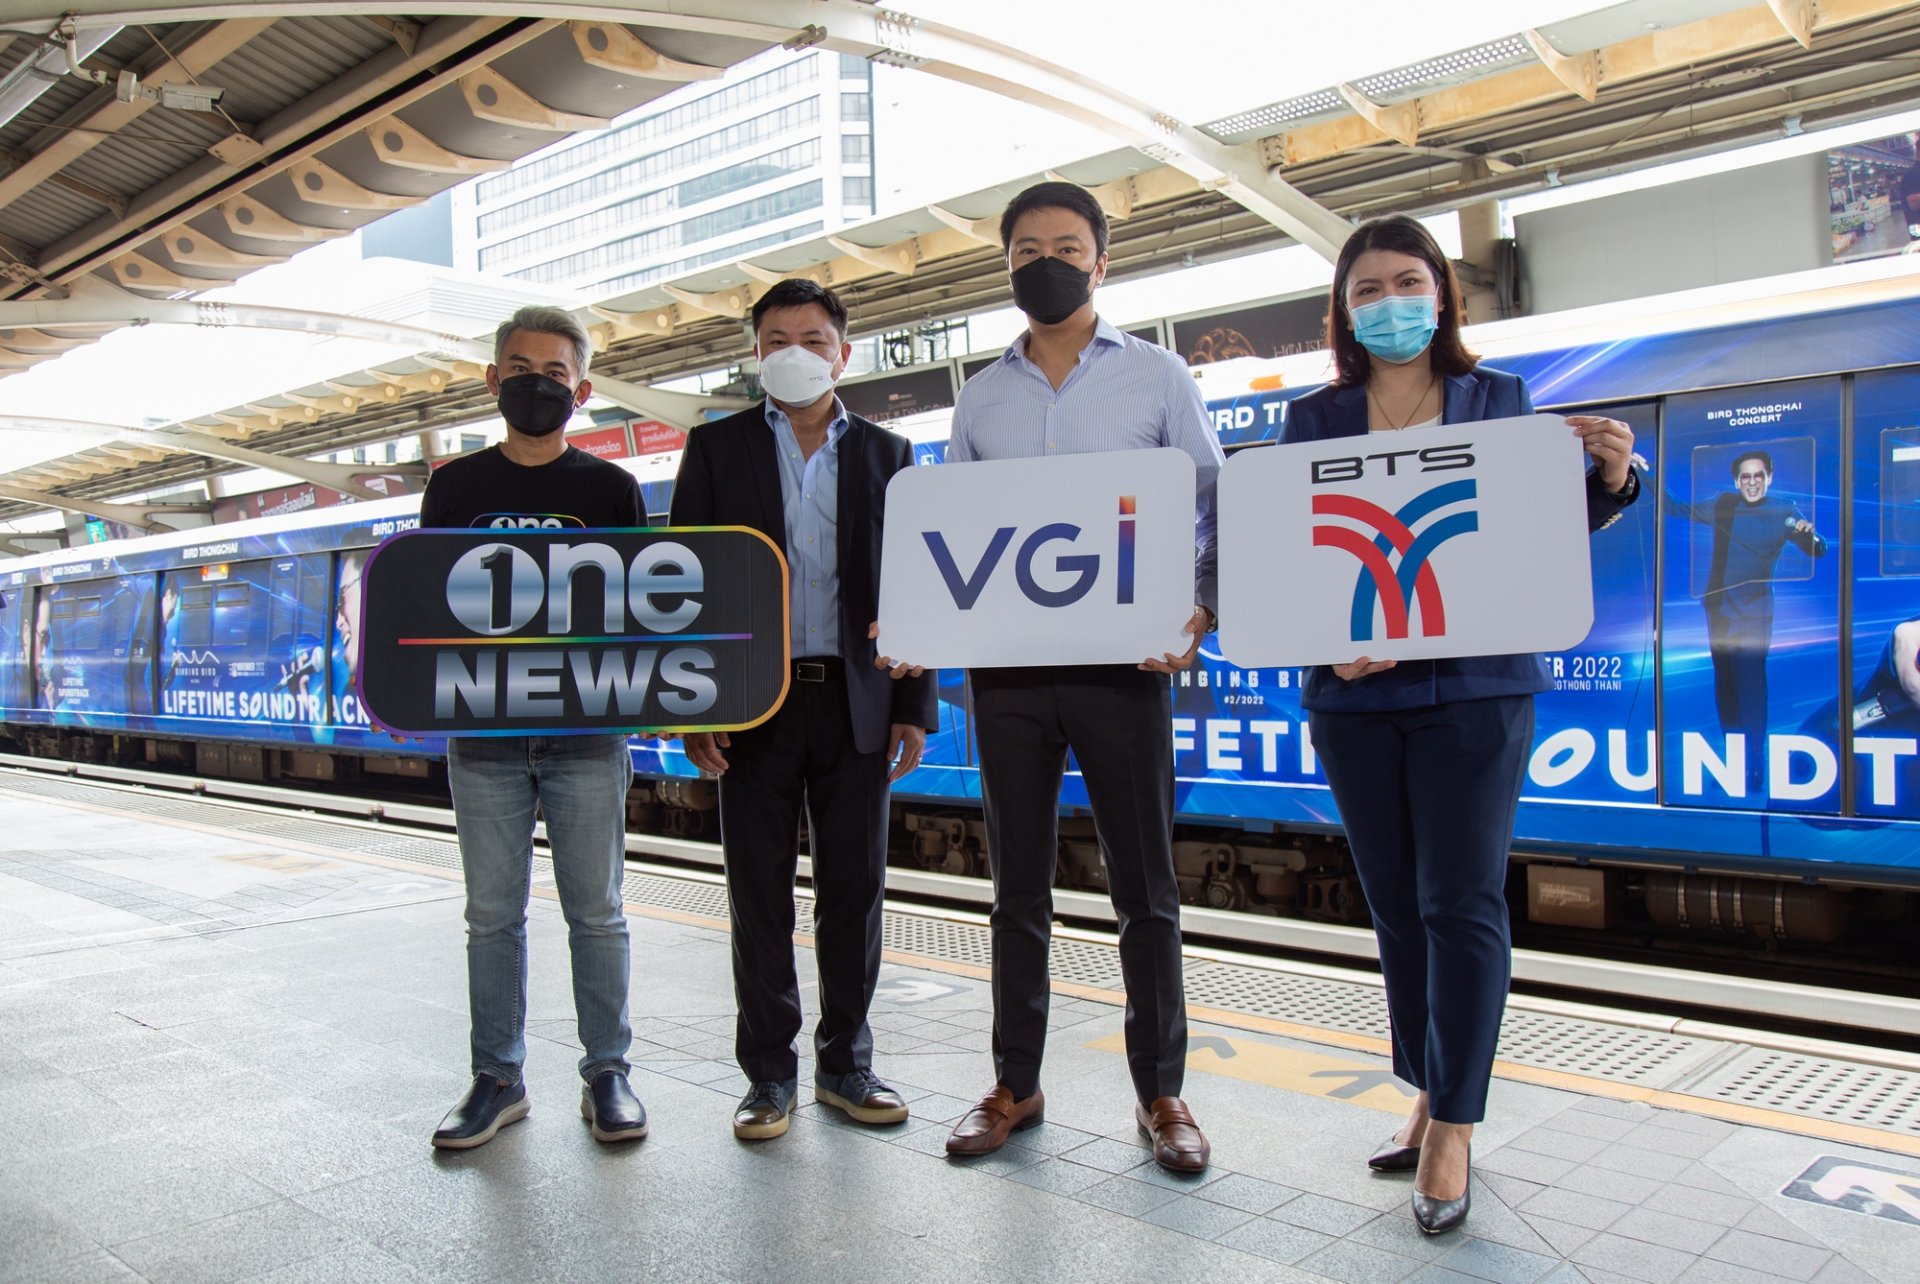 VGI จับมือ BTS และ onee เปิดตัวสำนักข่าวเคลื่อนที่ “one news” ออกอากาศในขบวนรถไฟฟ้า